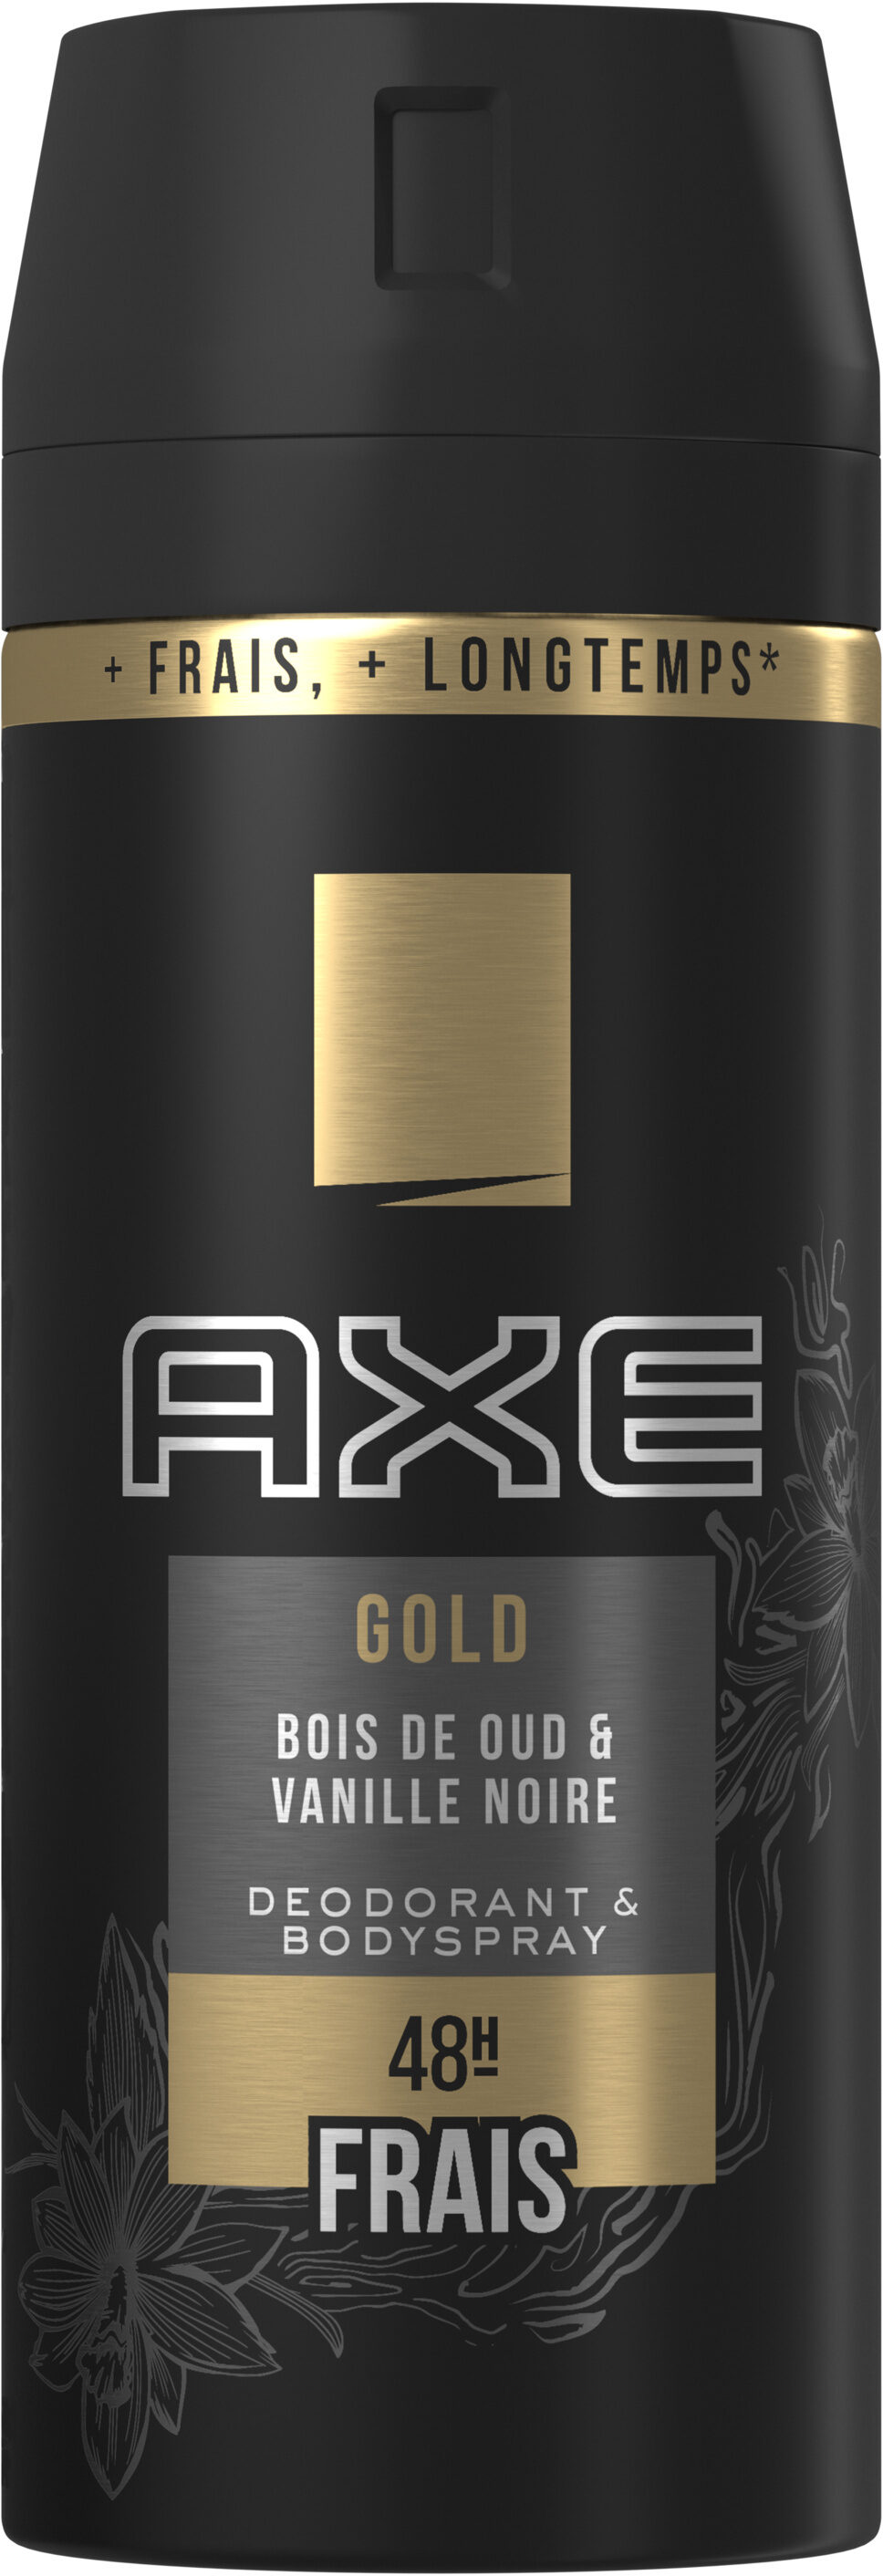 AXE Déodorant Homme Spray Antibactérien Gold - Tuote - fr